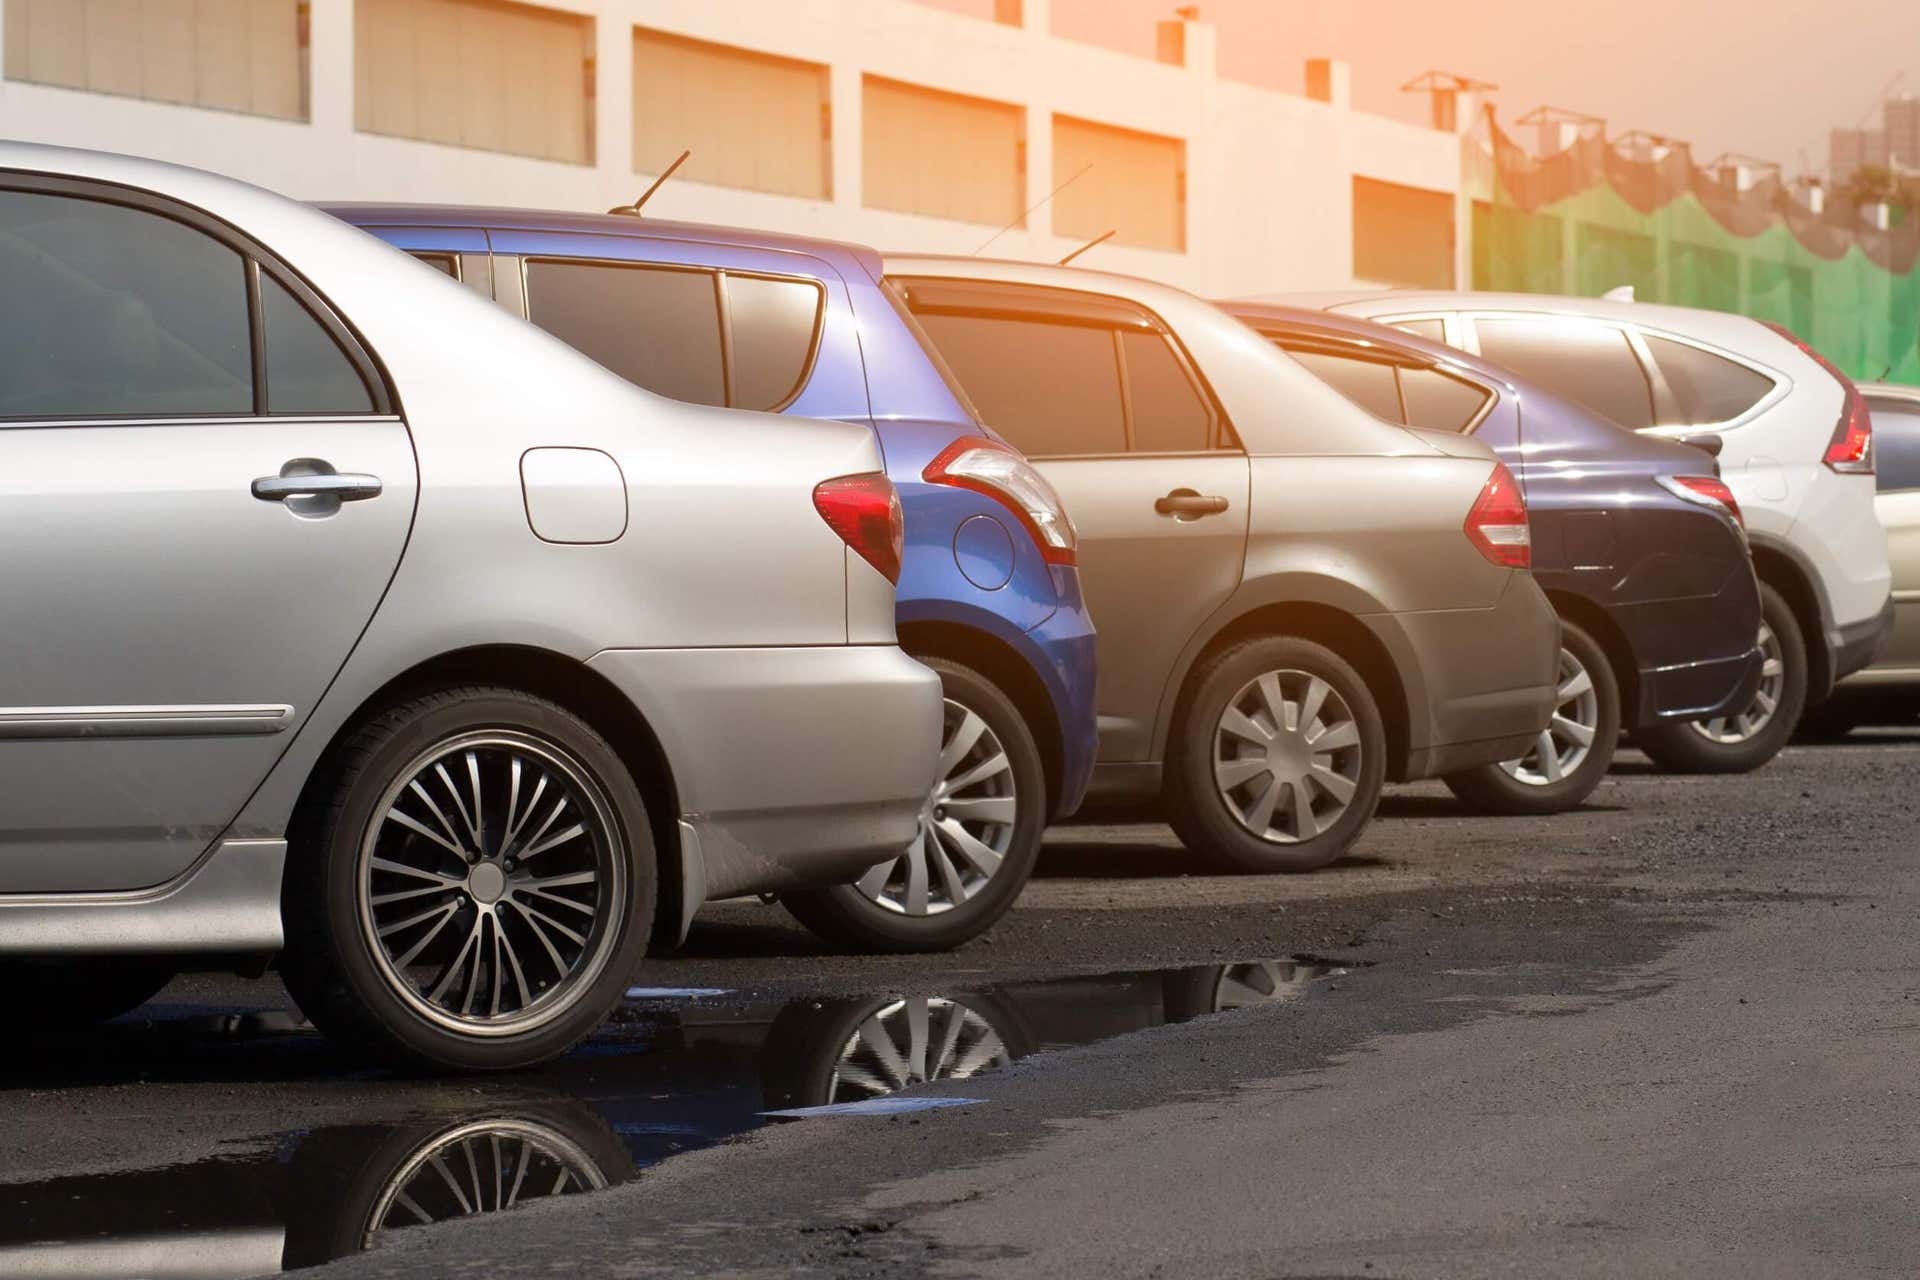 Angst om een auto te parkeren: hoe kun je het overwinnen?